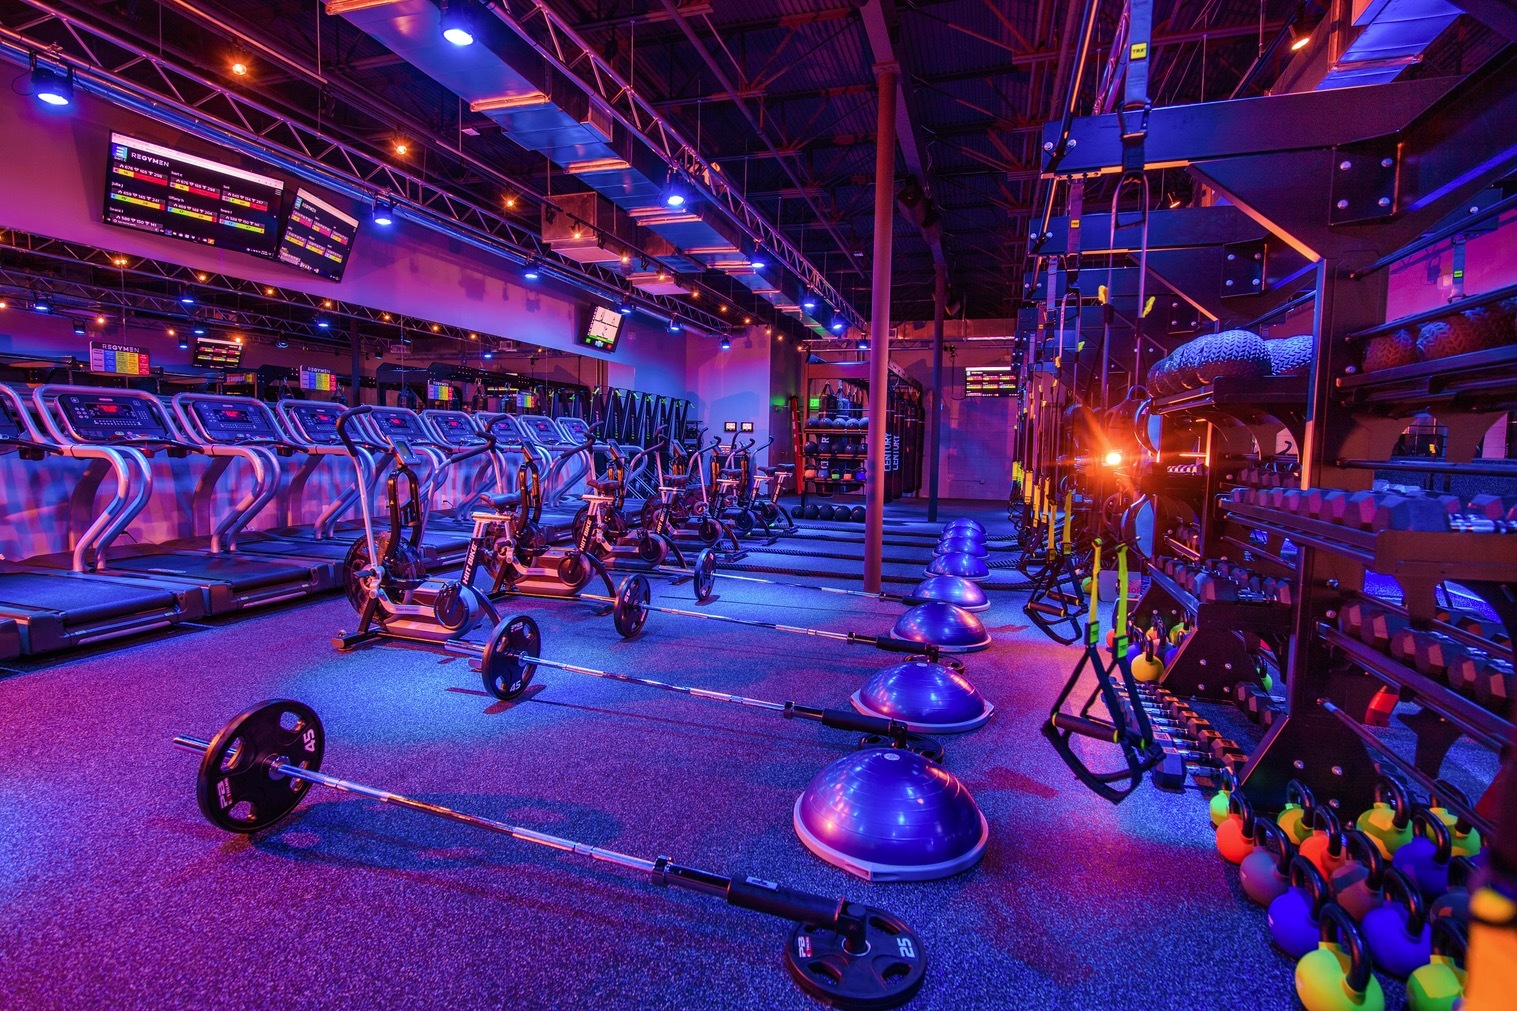 Client - Regymen Fitness Gym, Location - Bluebonnet Blvd. Baton Rouge, LA, Purpose - Studio Tour